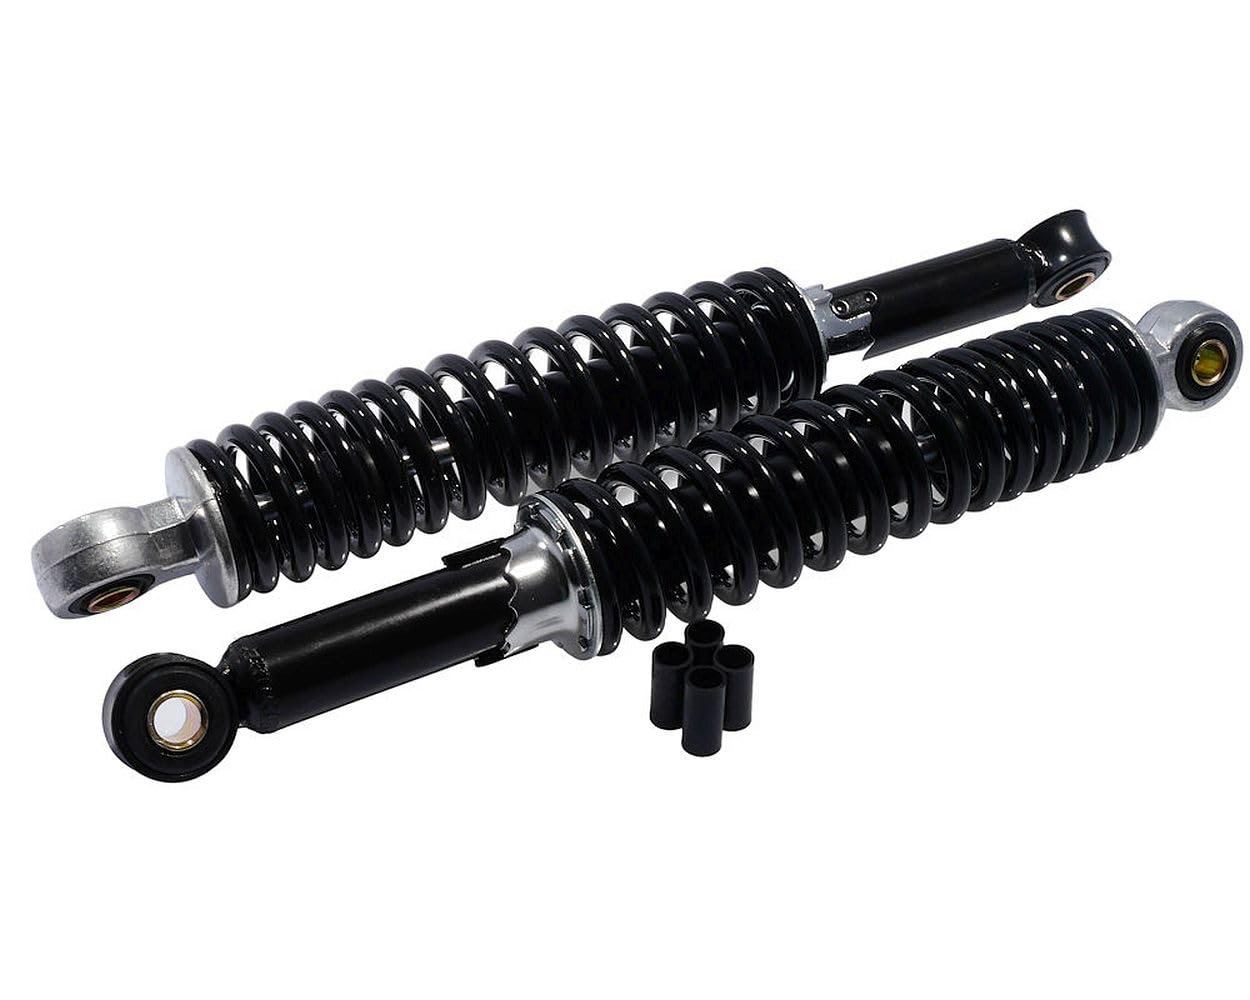 2EXTREME Stoßdämpfer Federbein Set 310mm M8 M10 schwarz universal kompatibel für Moped Schaltmoped Mofa von 2EXTREME